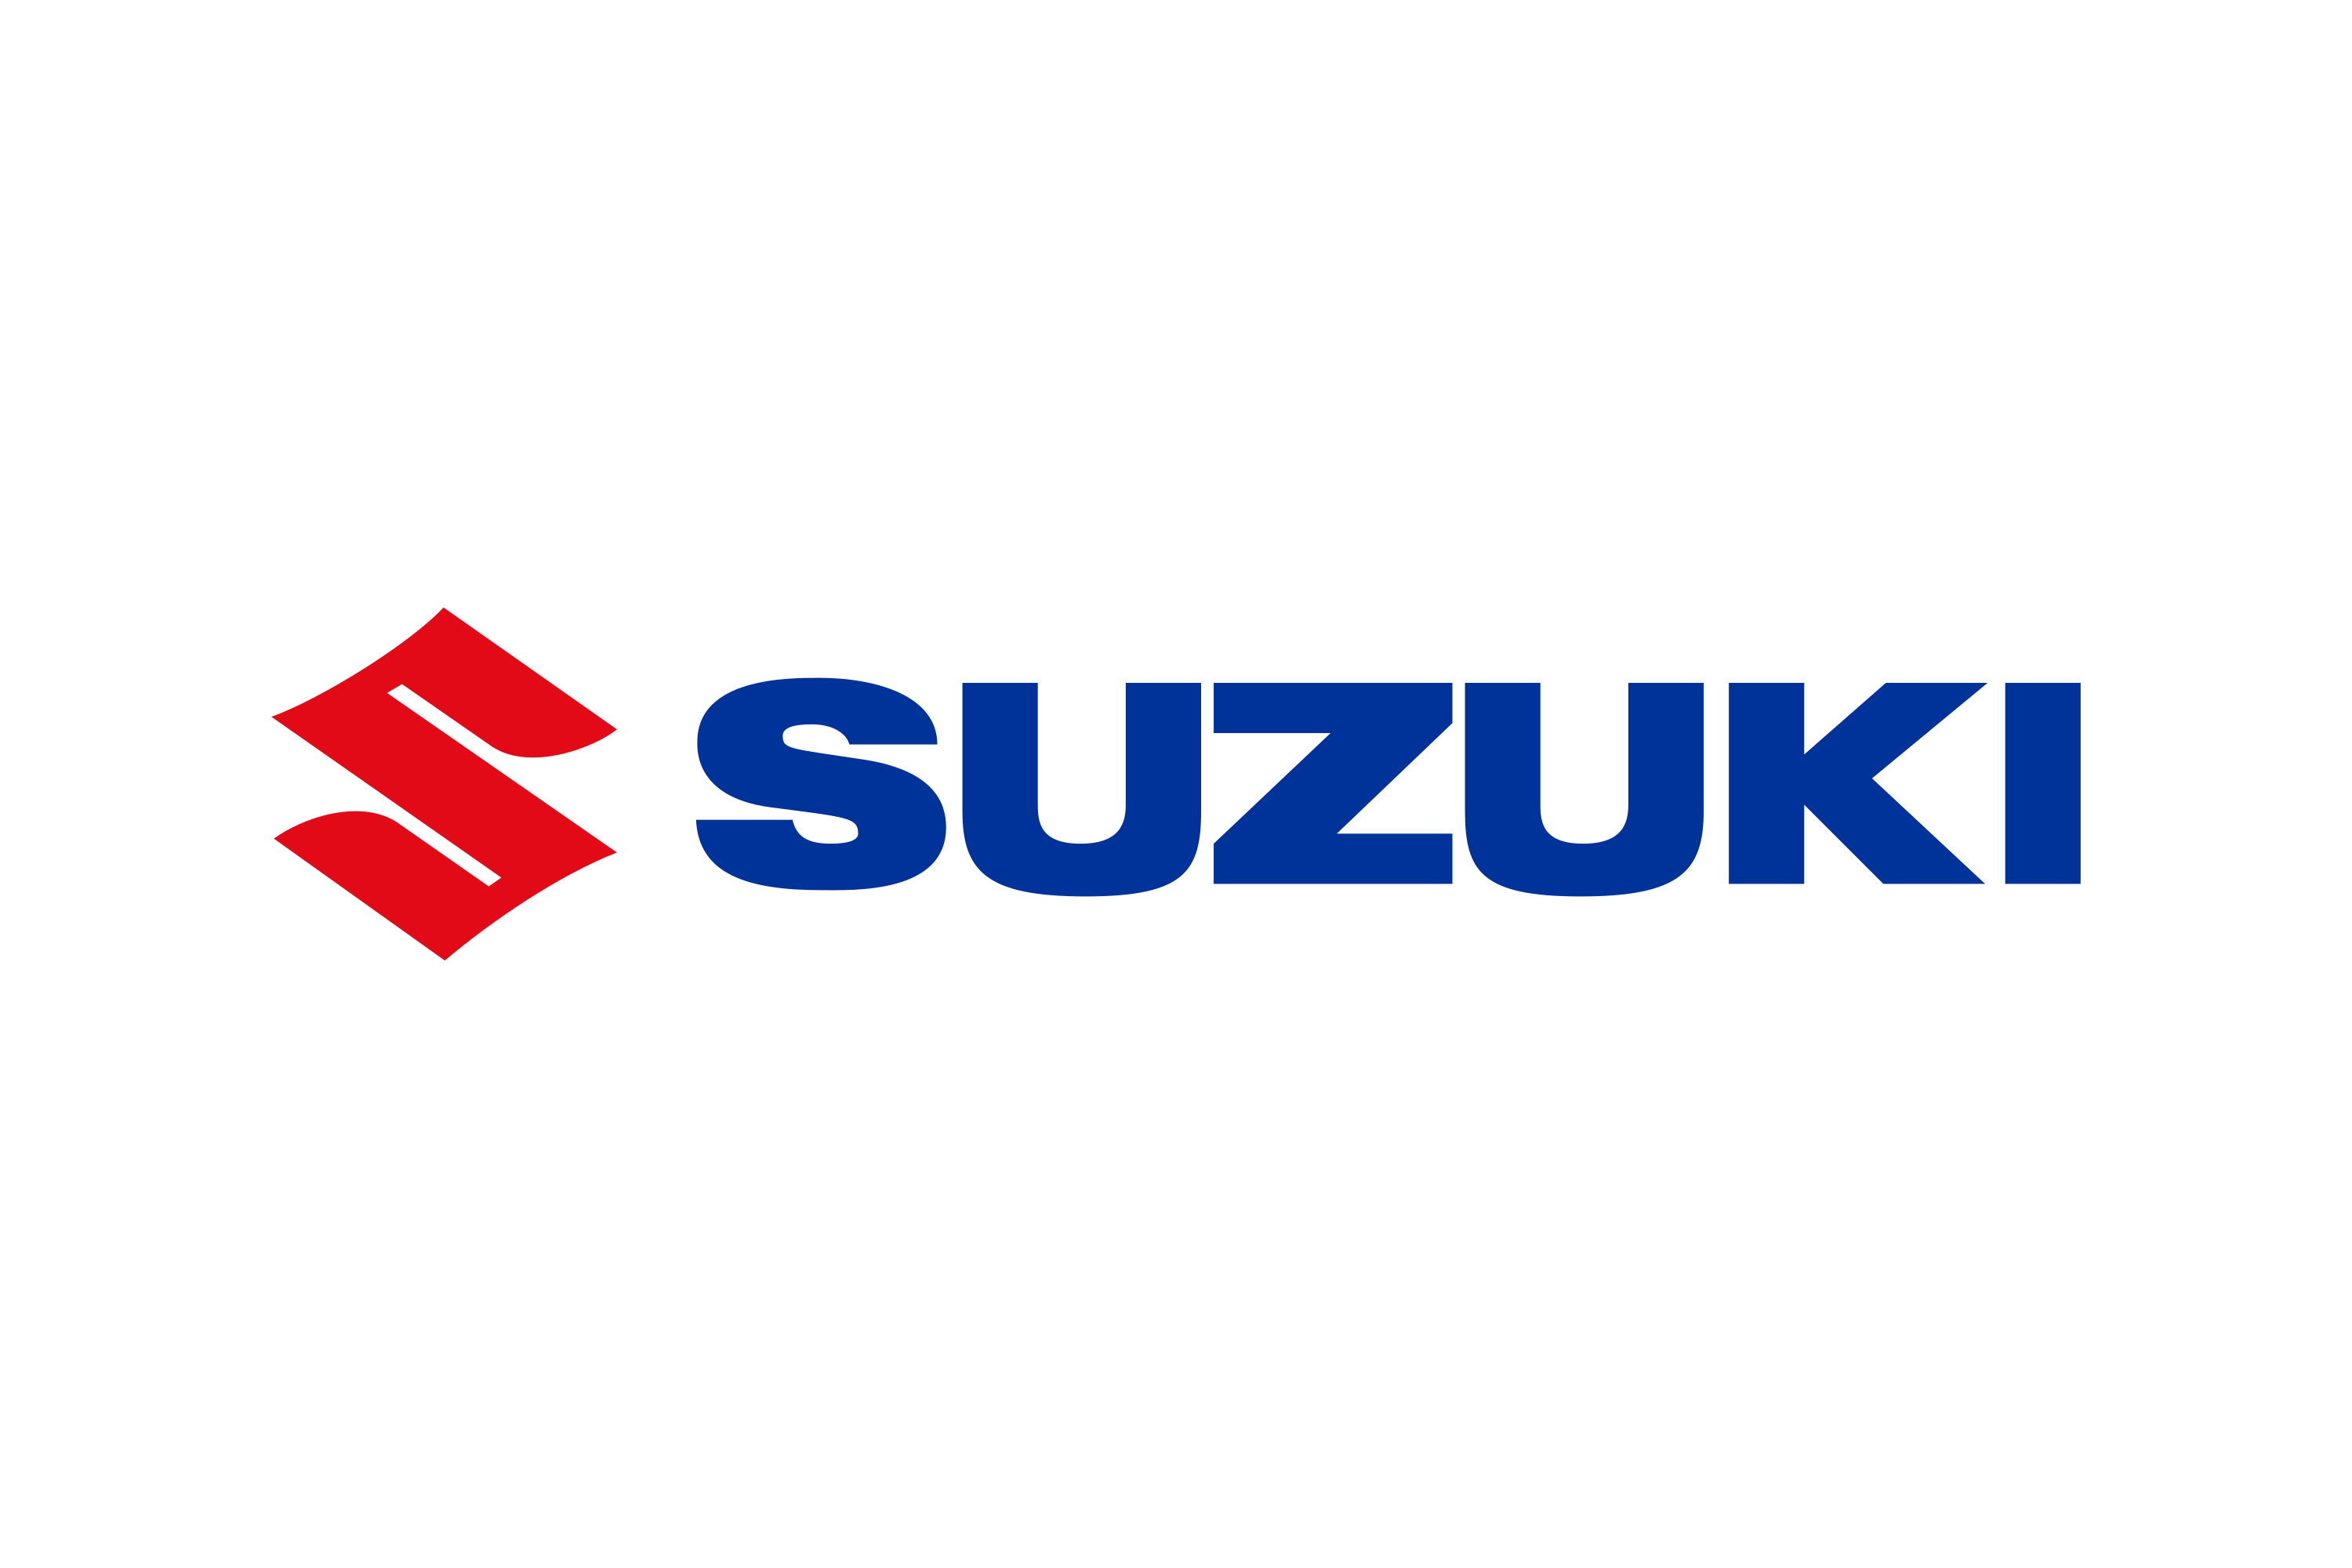 Suzuki logo PNG image